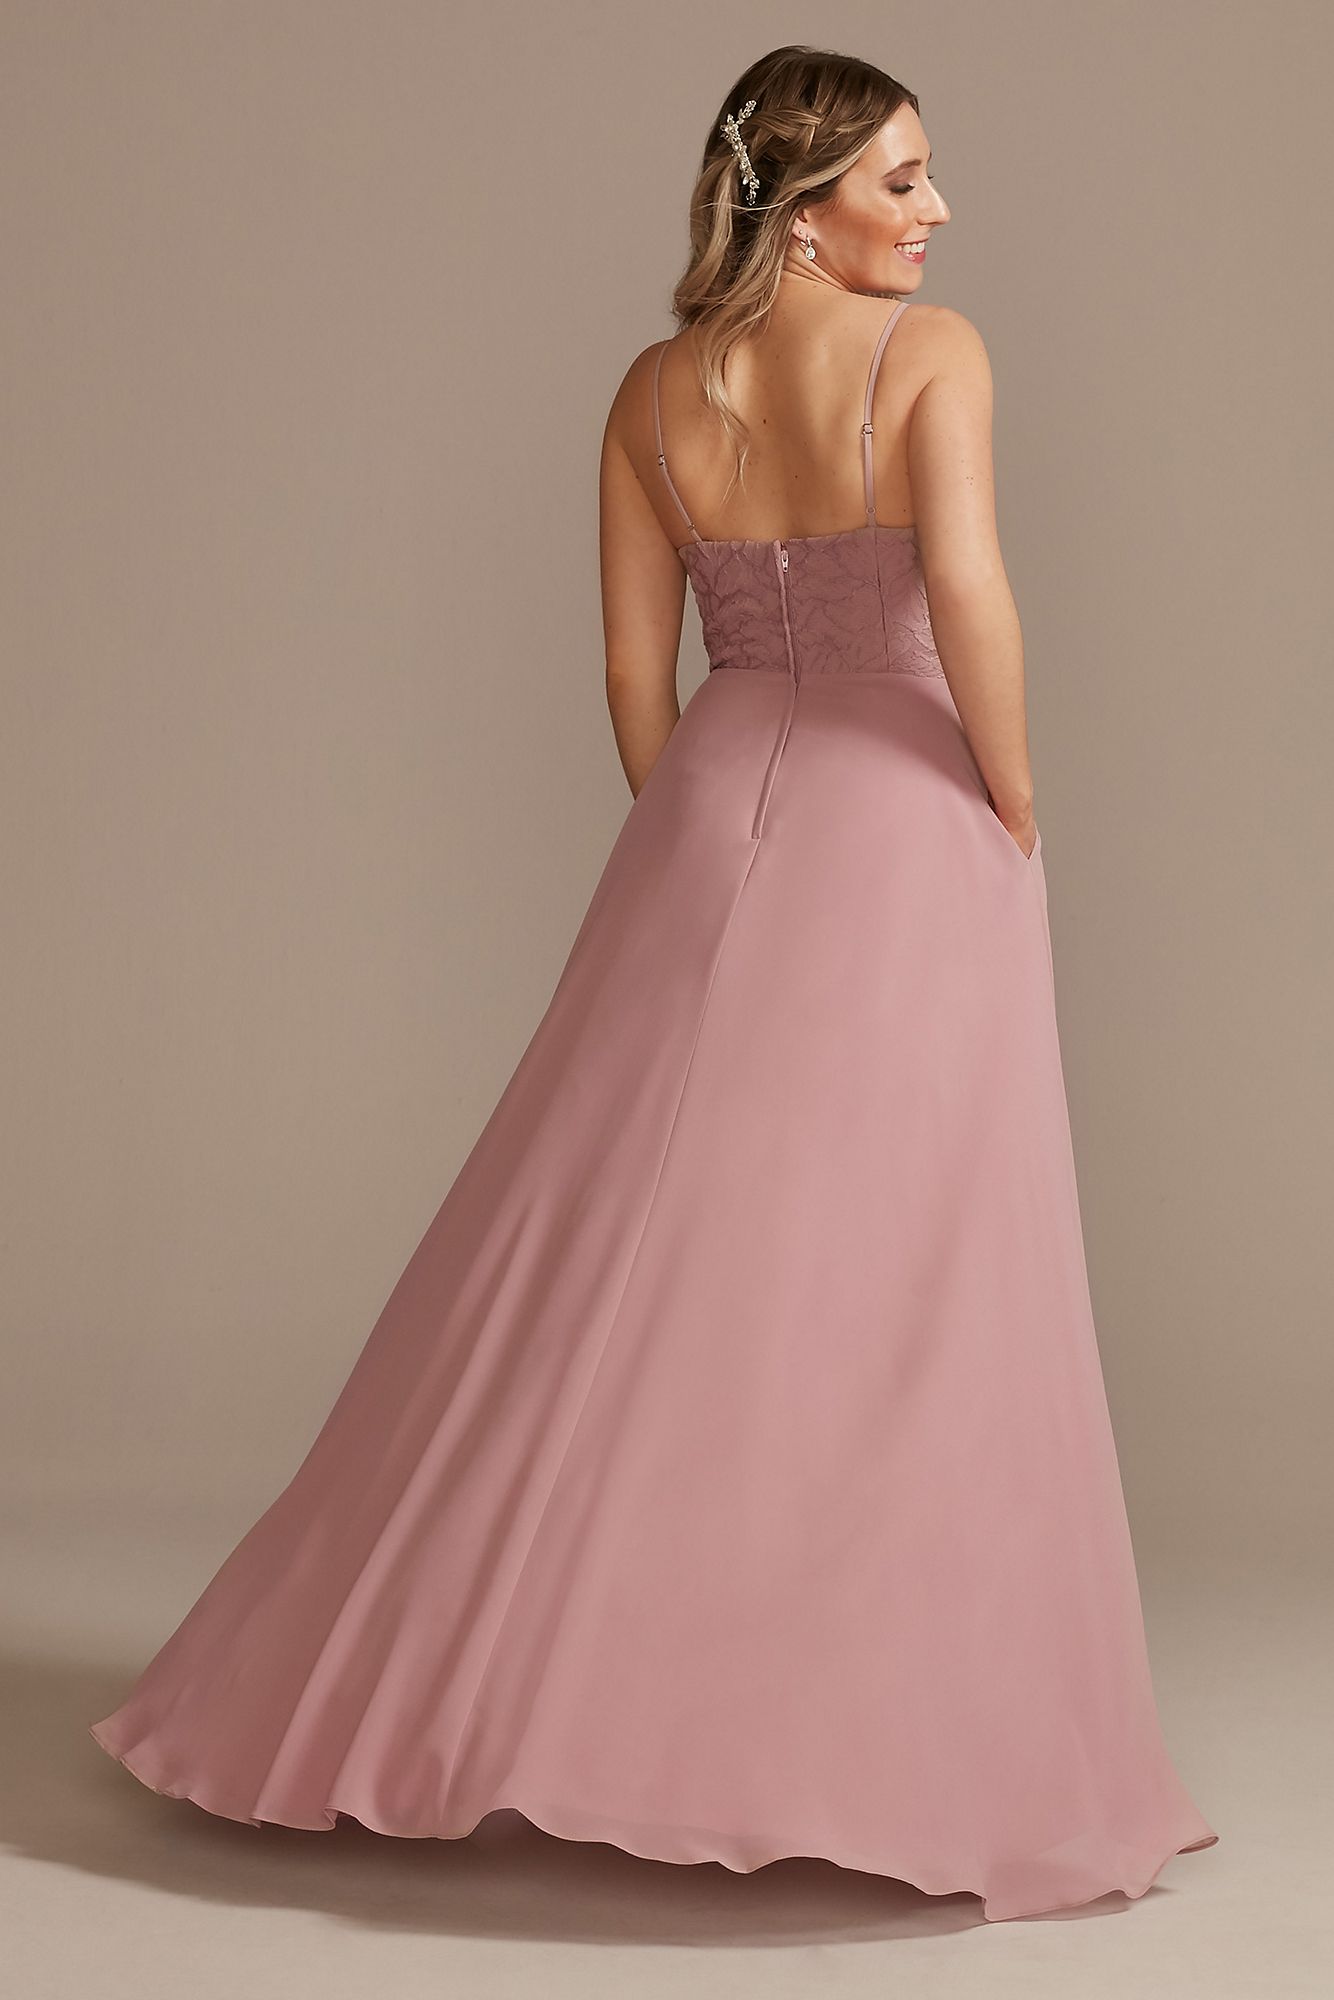 Lace Chiffon High-Low Bridesmaid Dress  F20360